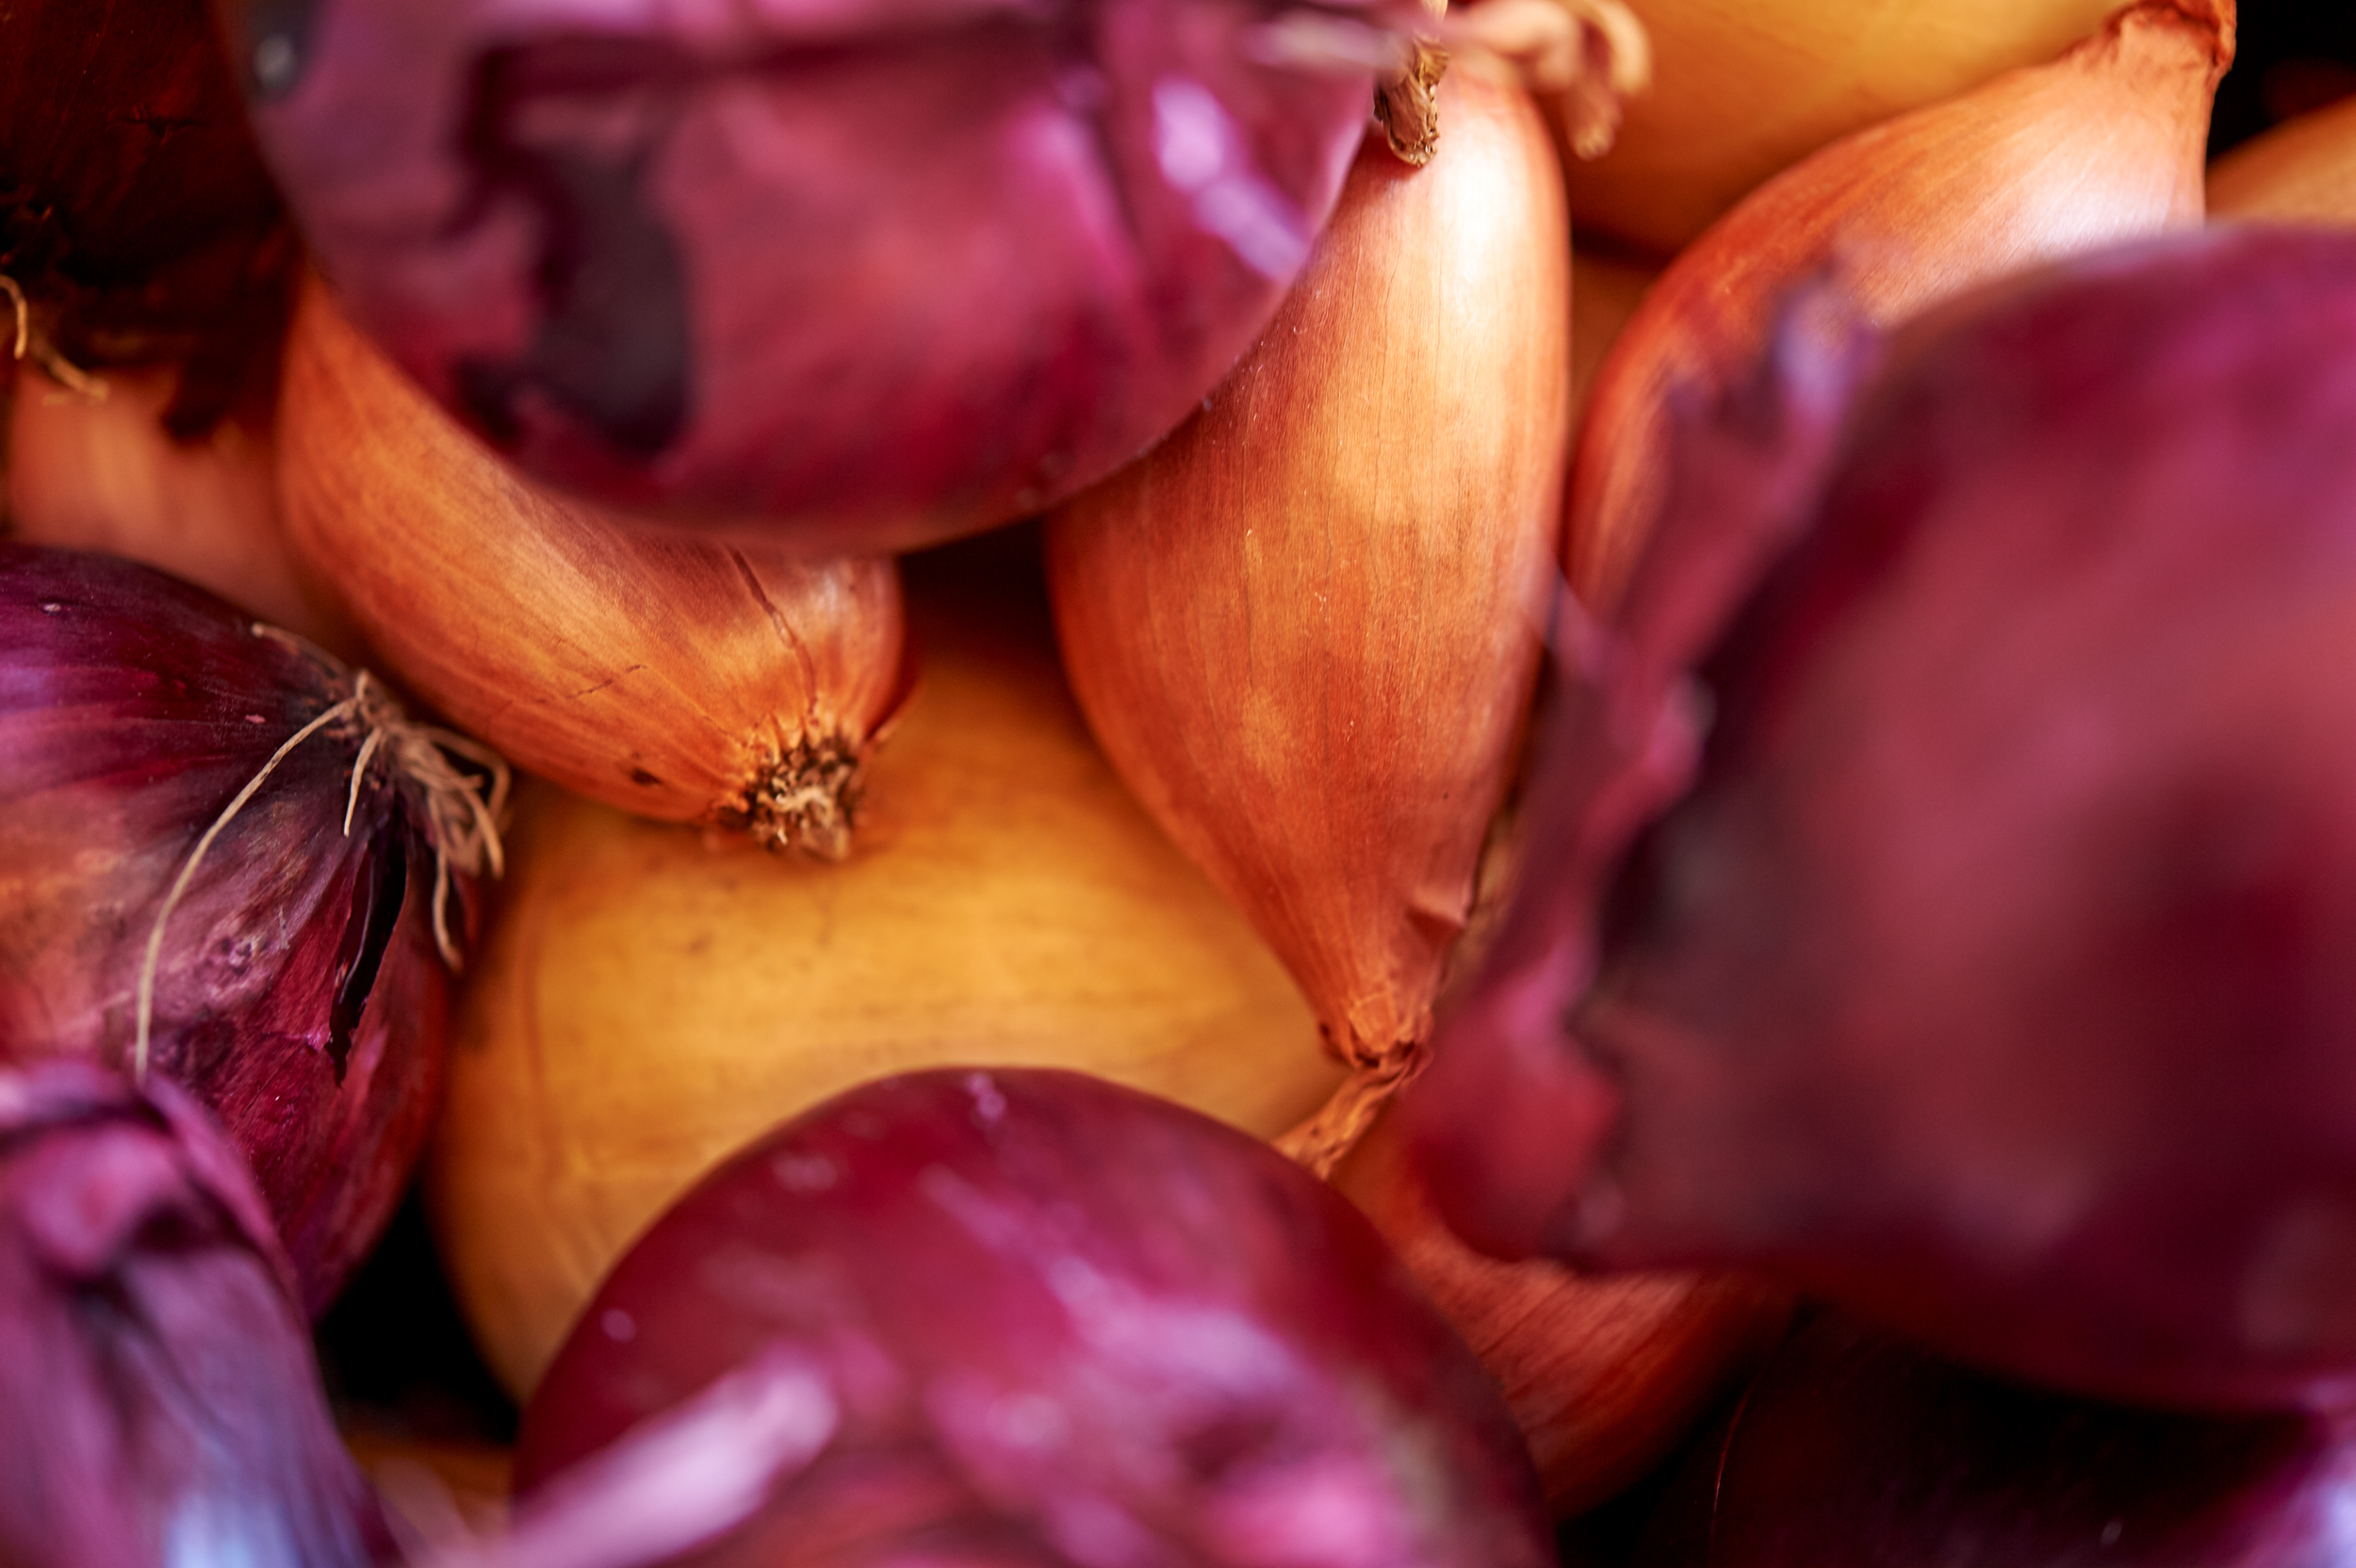 Onions closeup